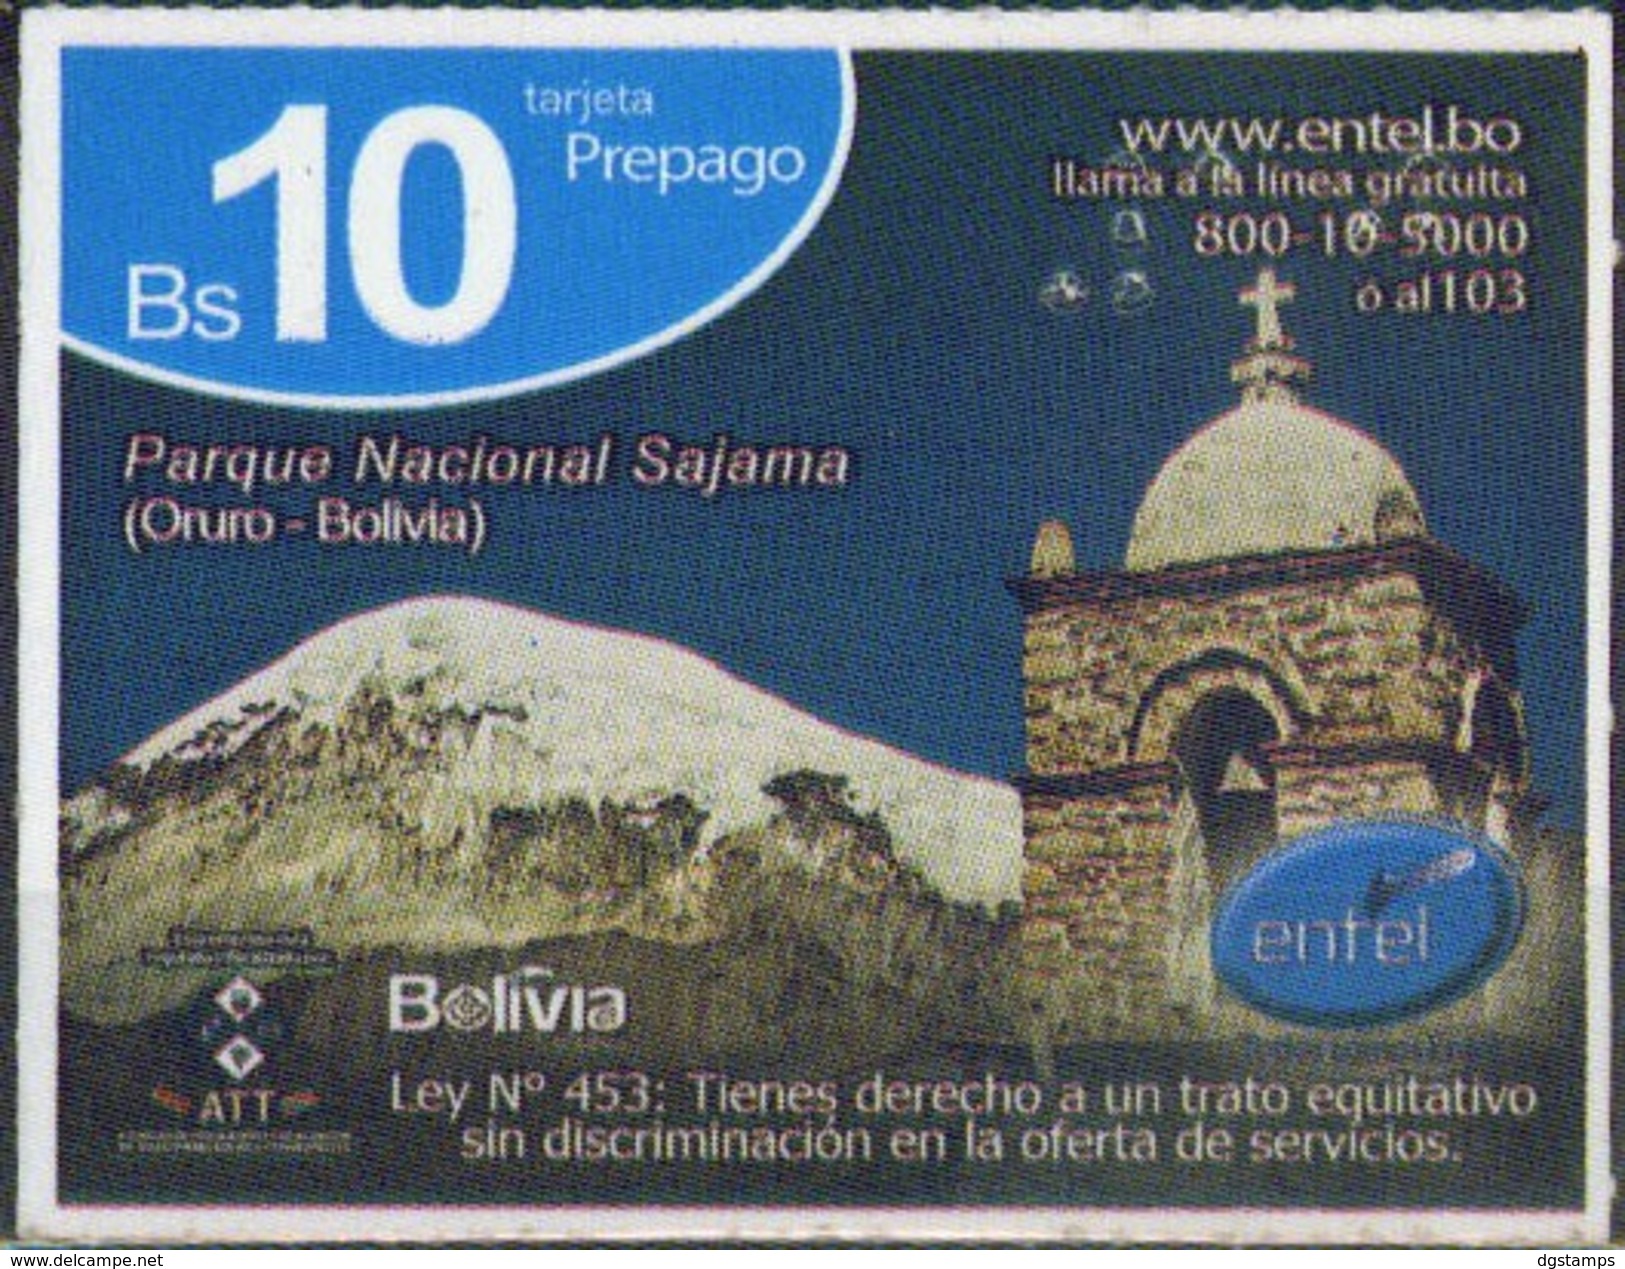 Bolivia 2017- 25-07-2018 Prepago ENTEL. Parque Nacional Sajama. Oruro. - Bolivia